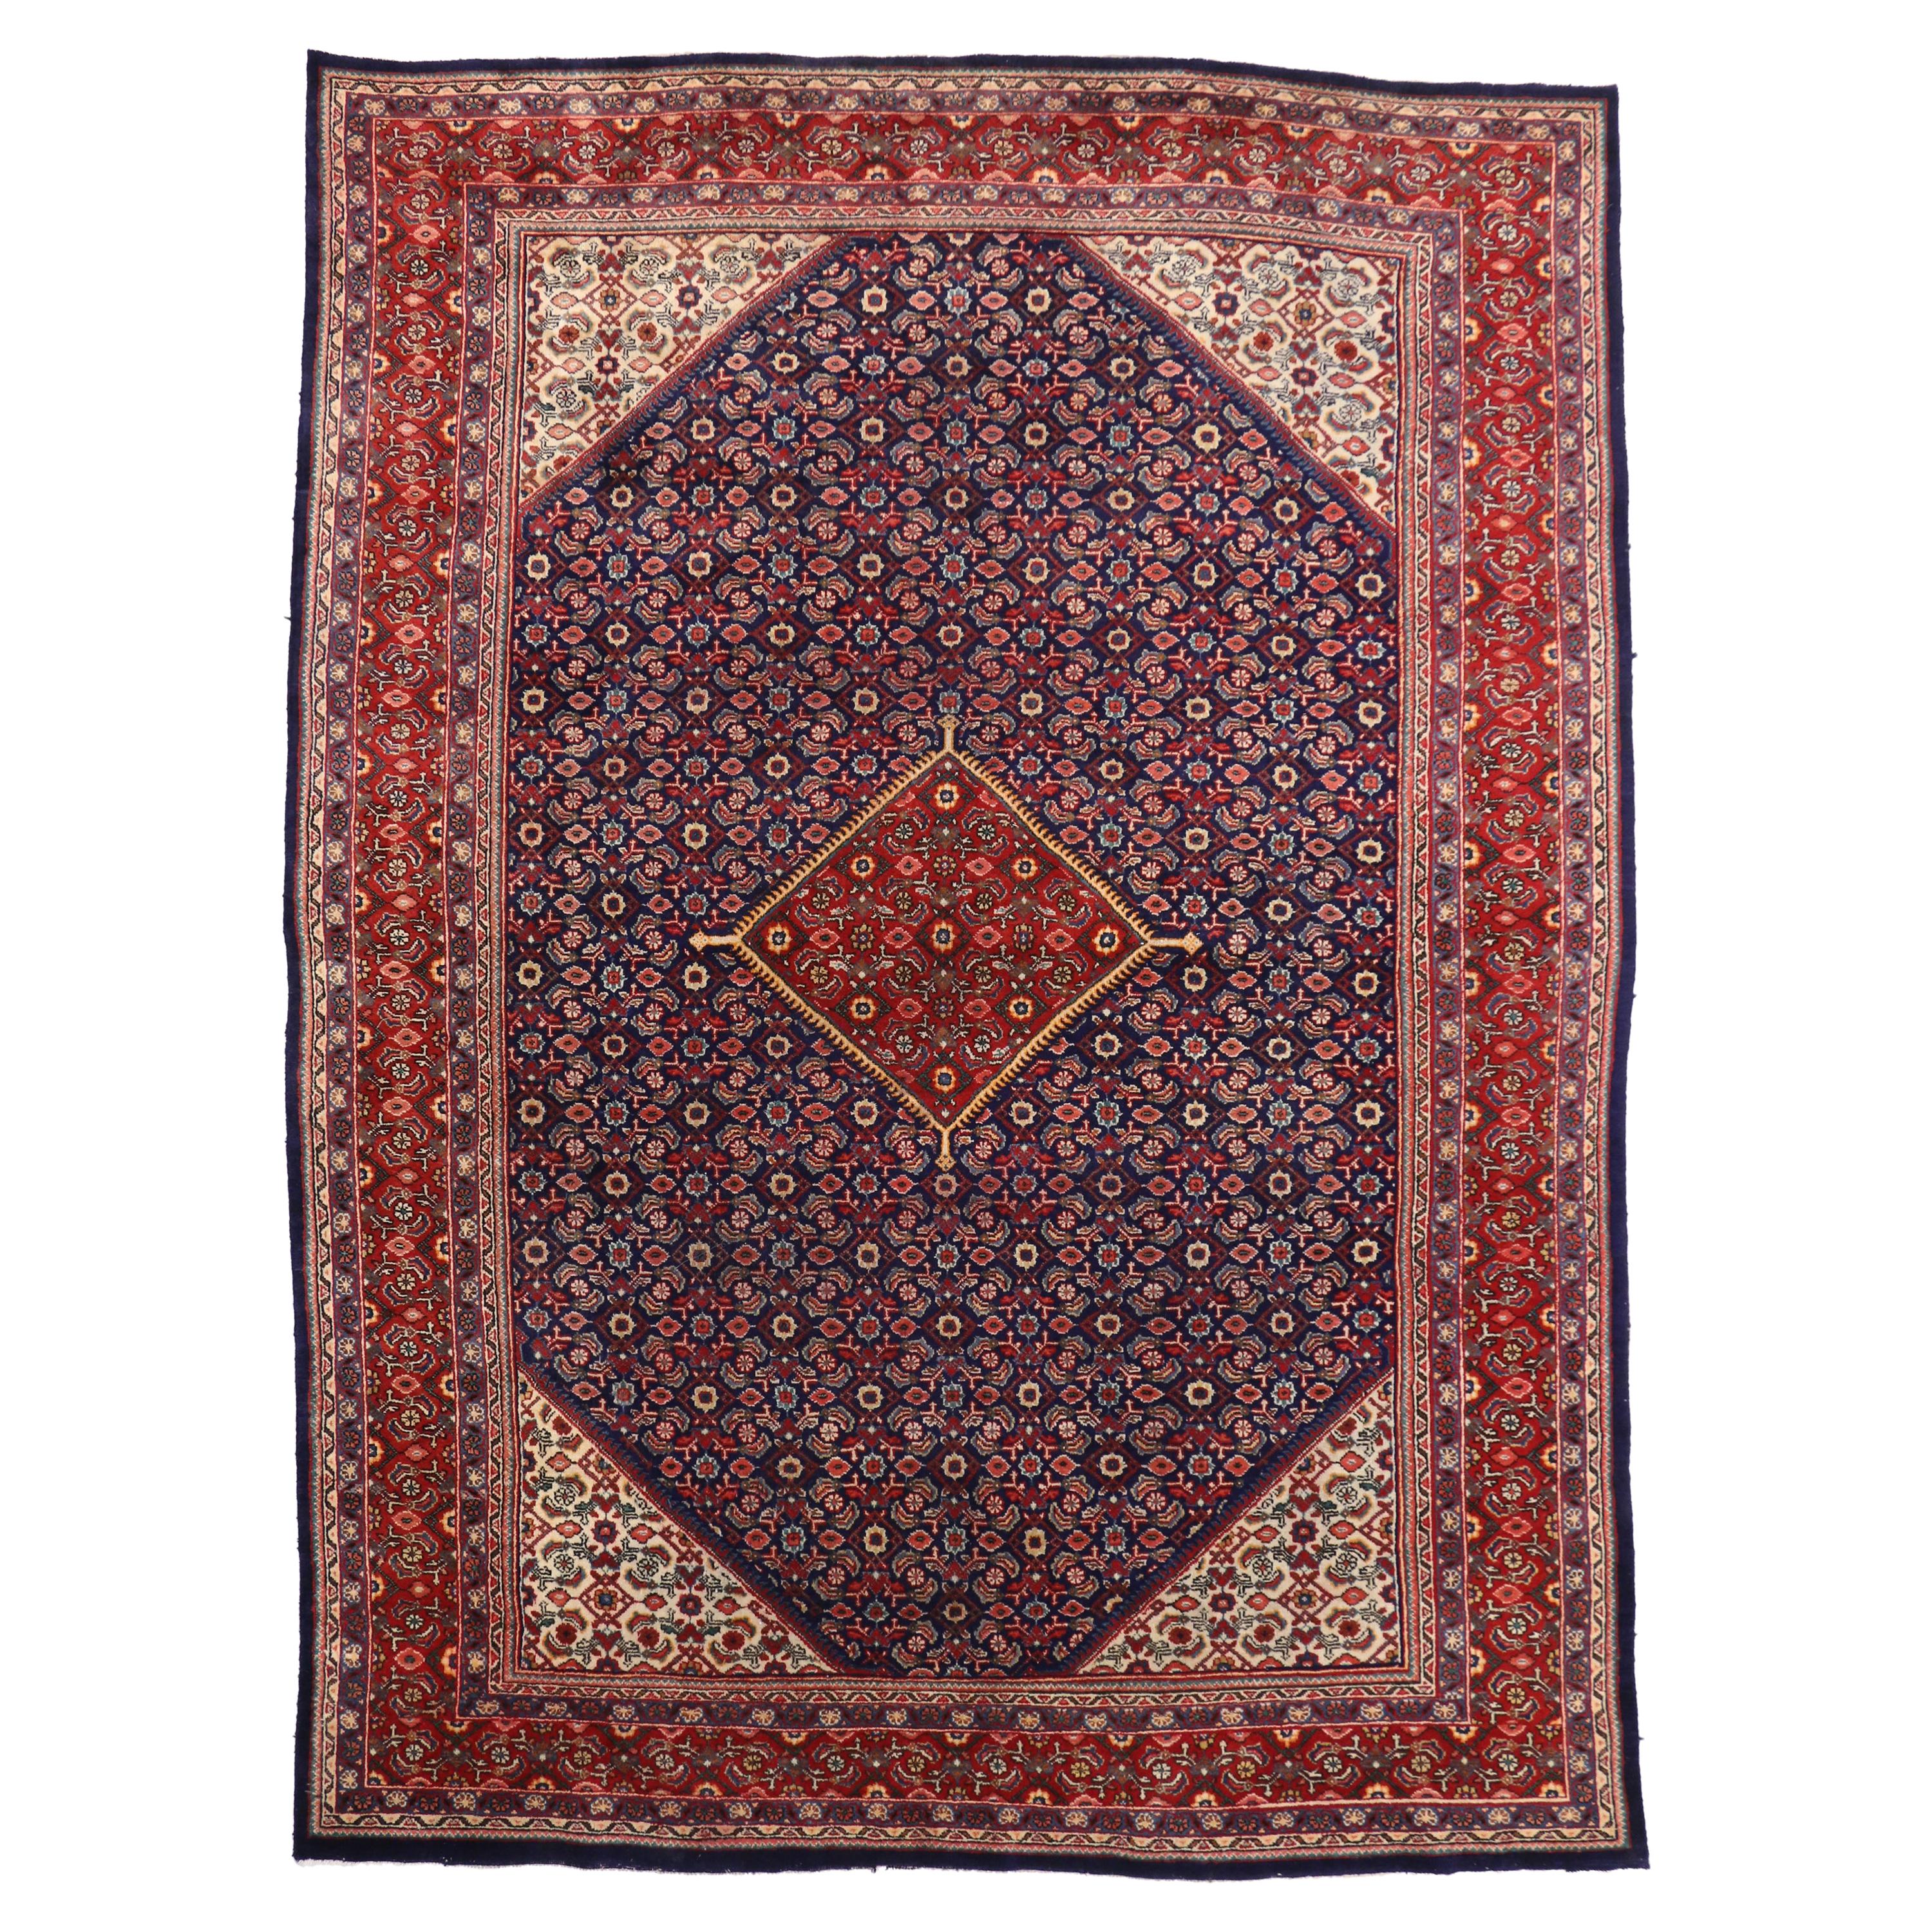 Persischer Hamadan-Teppich im traditionellen Stil und im Malayer-Herati-Design